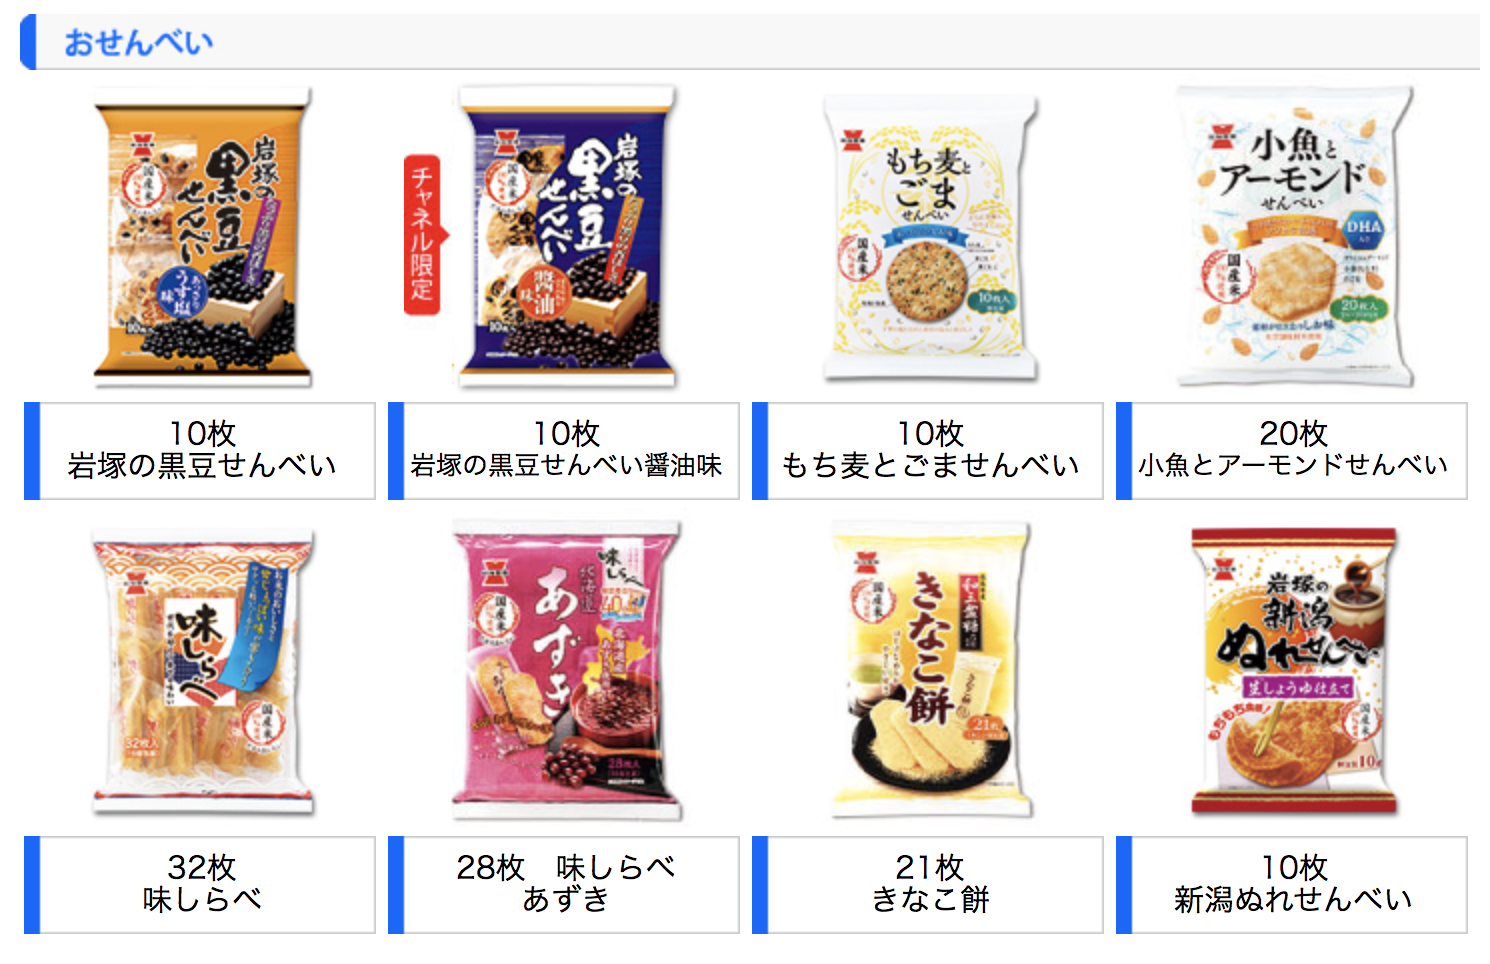 岩塚製菓が販売している商品